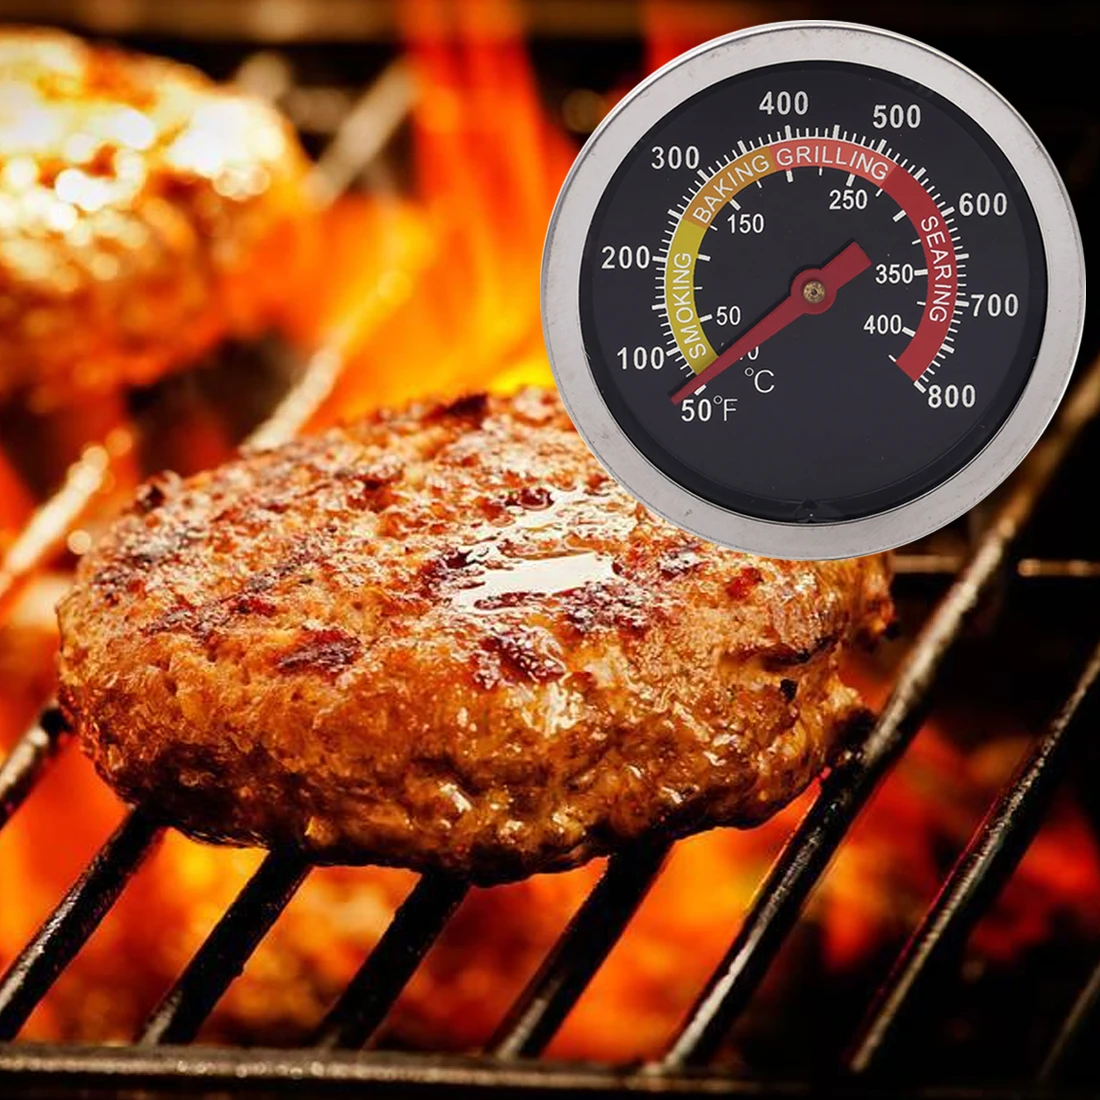 Термометр для гриля, датчик температуры, инструменты для приготовления пищи, нержавеющая сталь, барбекю, курильщик, духовка, плита, термометр, калибр 50-400C